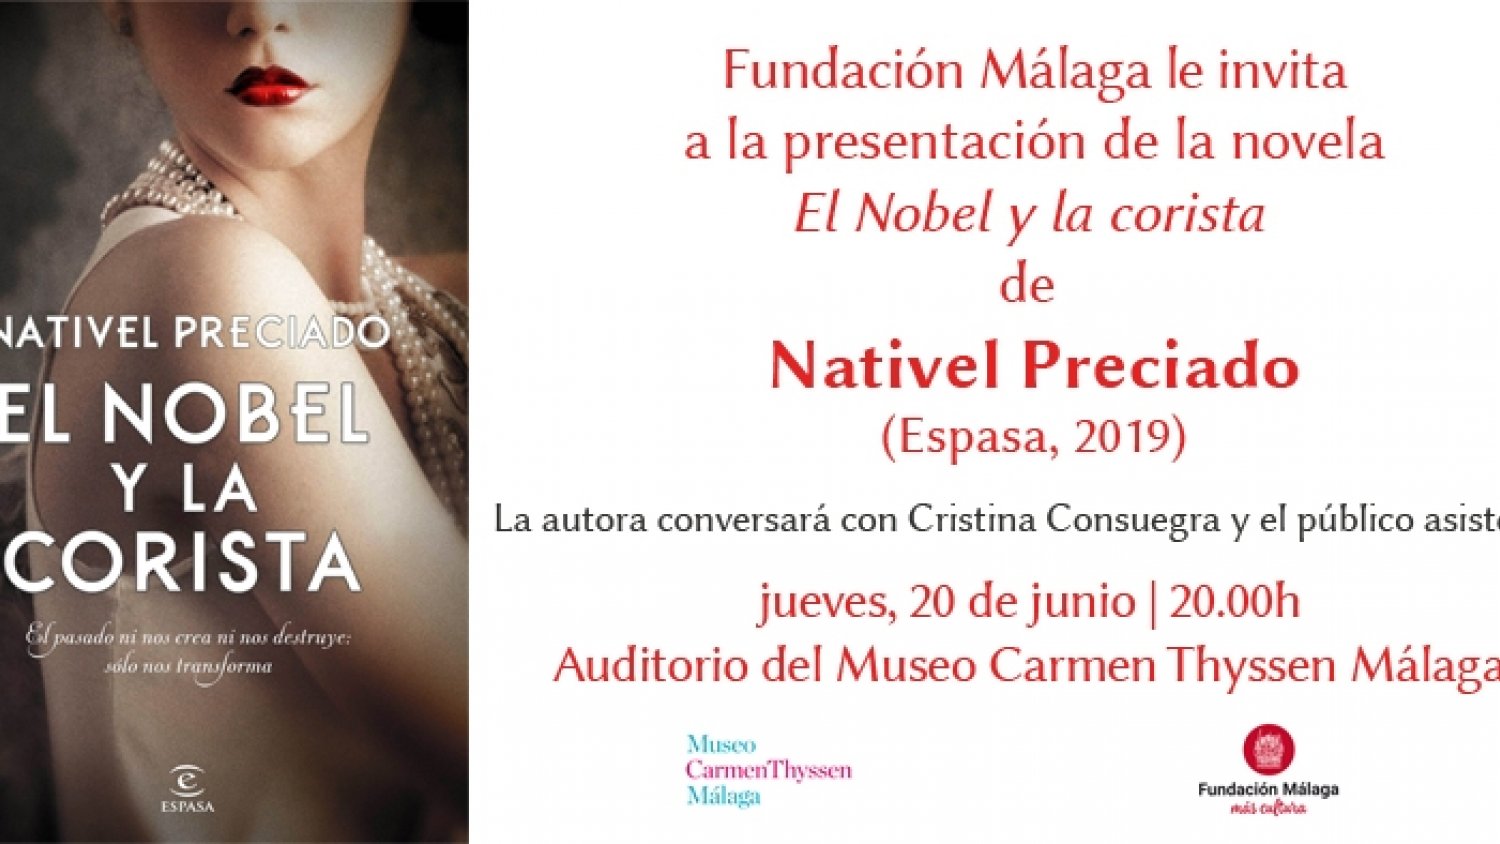 Nativel Preciado presentará su nueva novela en el Auditorio del Museo Carmen Thyssen